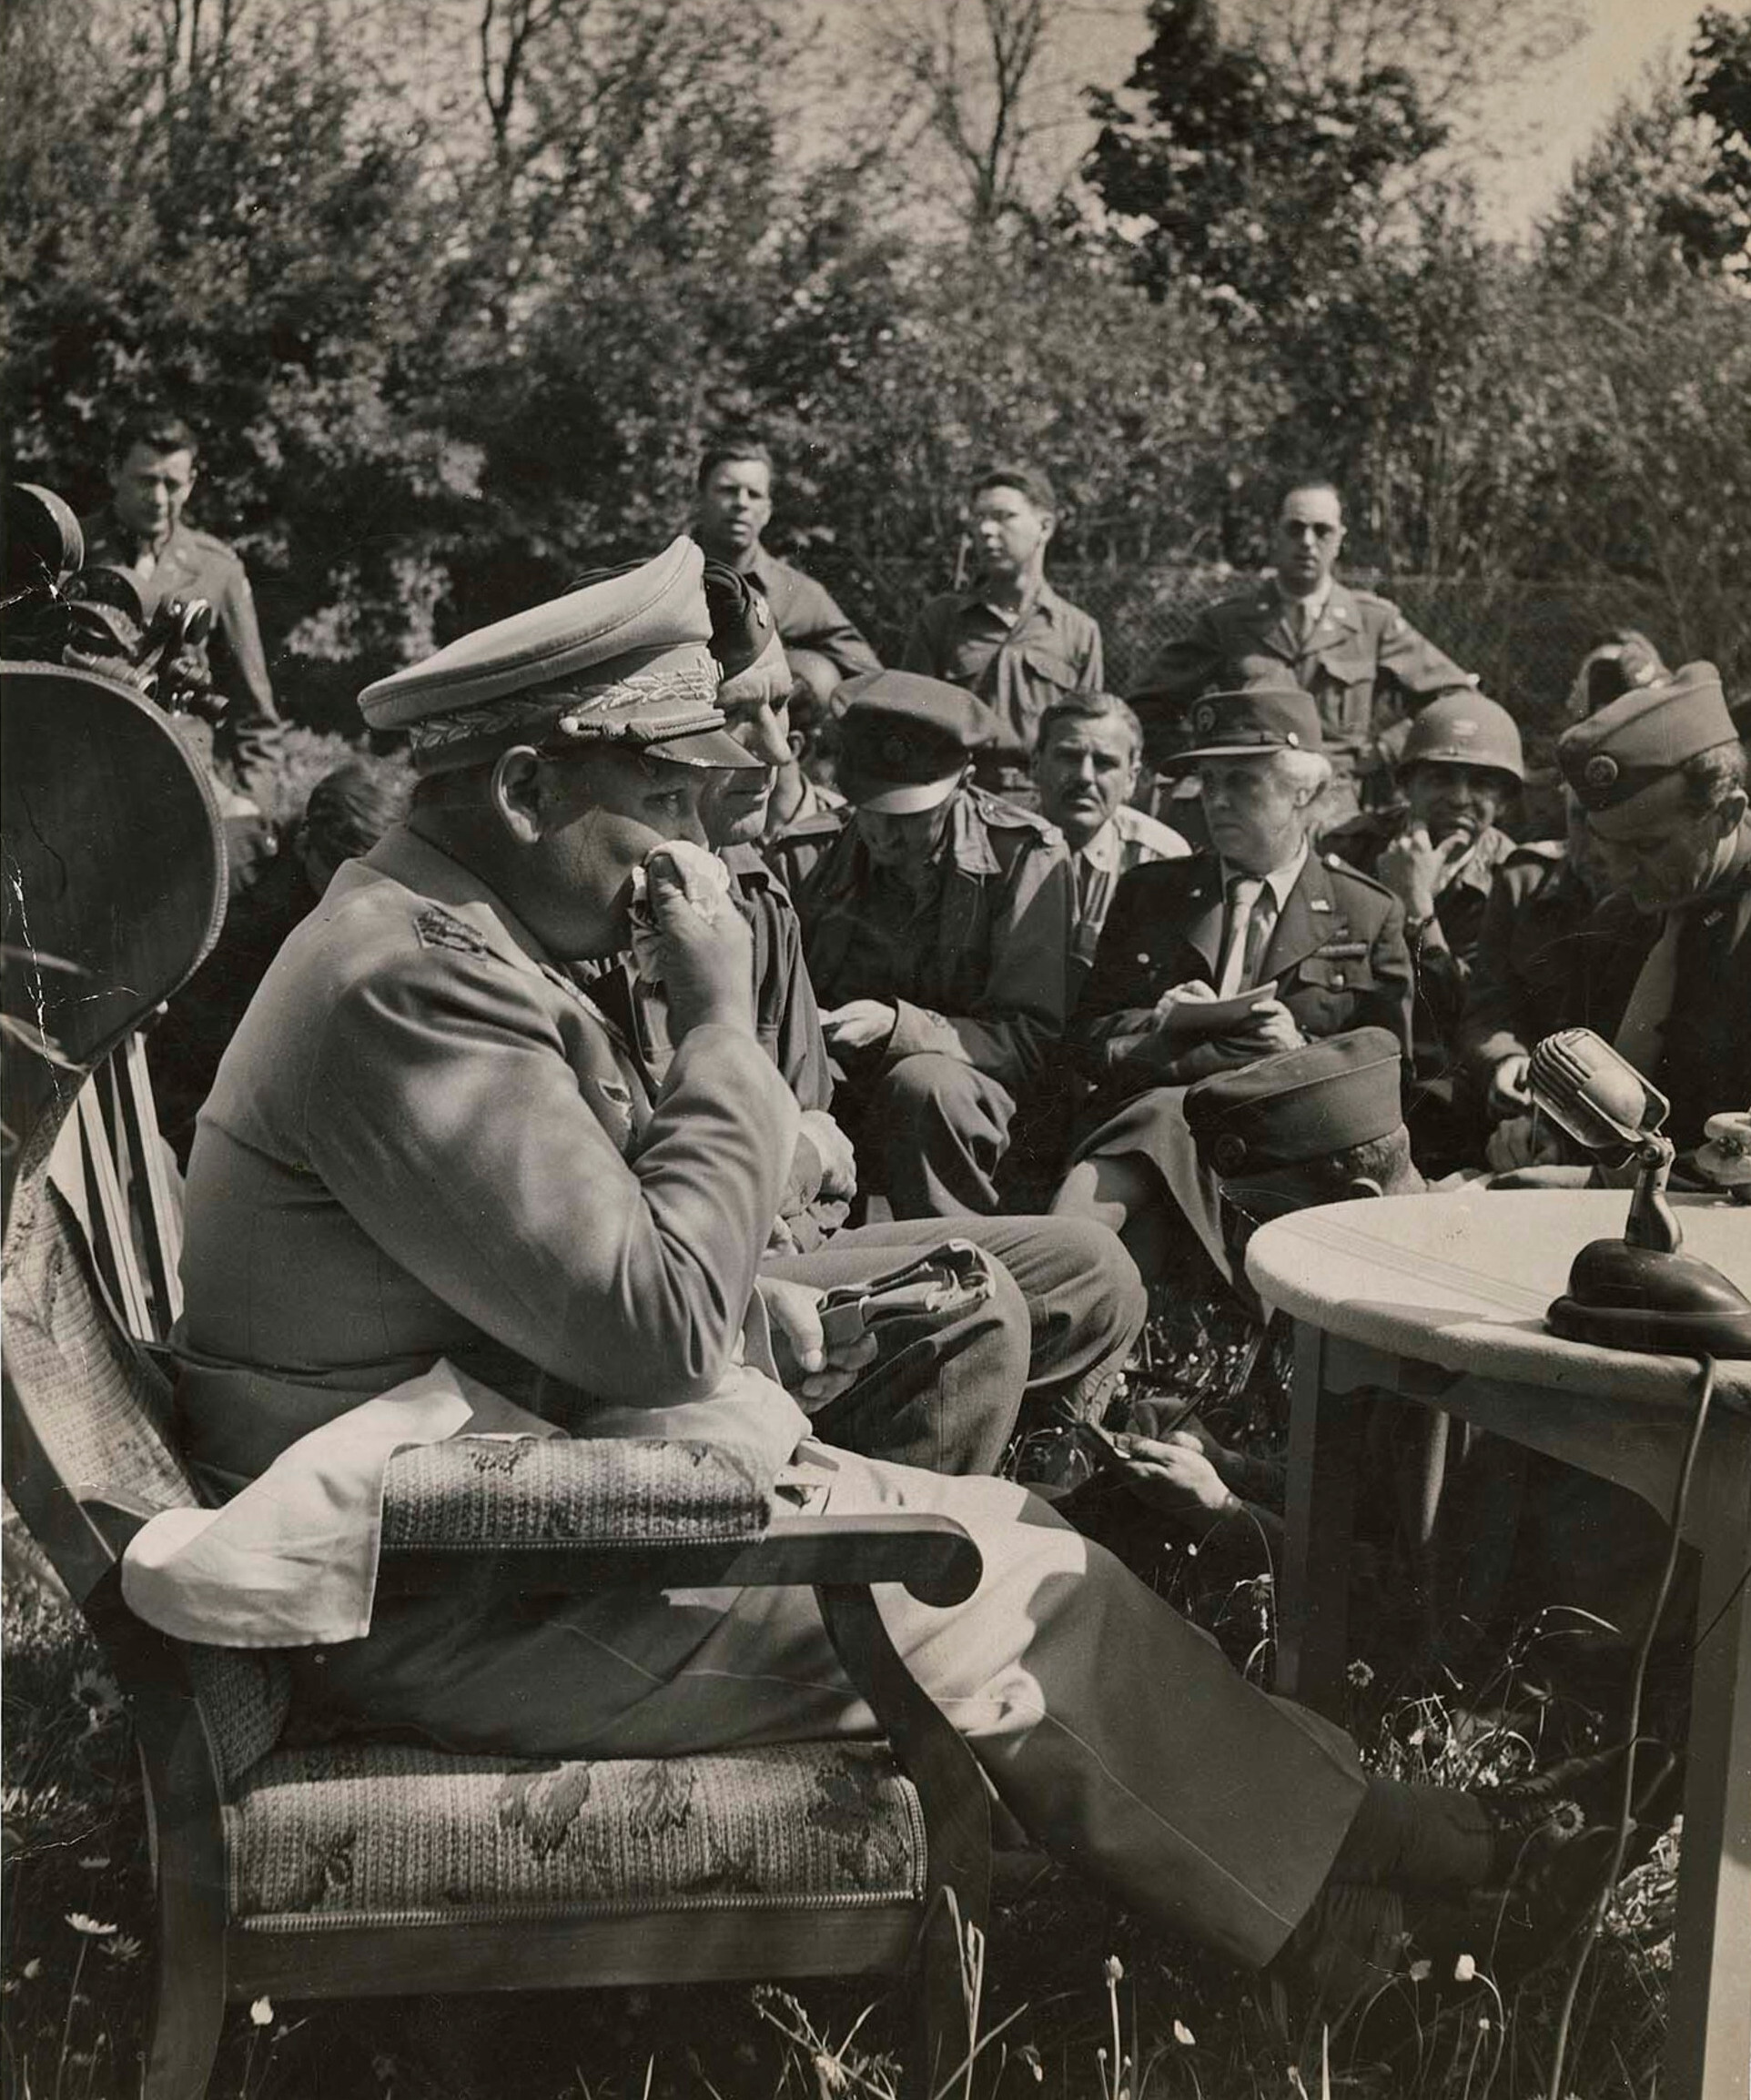 Рейхсмаршал Геринг после взятия в плен на пресс-конференции, 1945 год. Фотограф Маргарет Бурк-Уайт